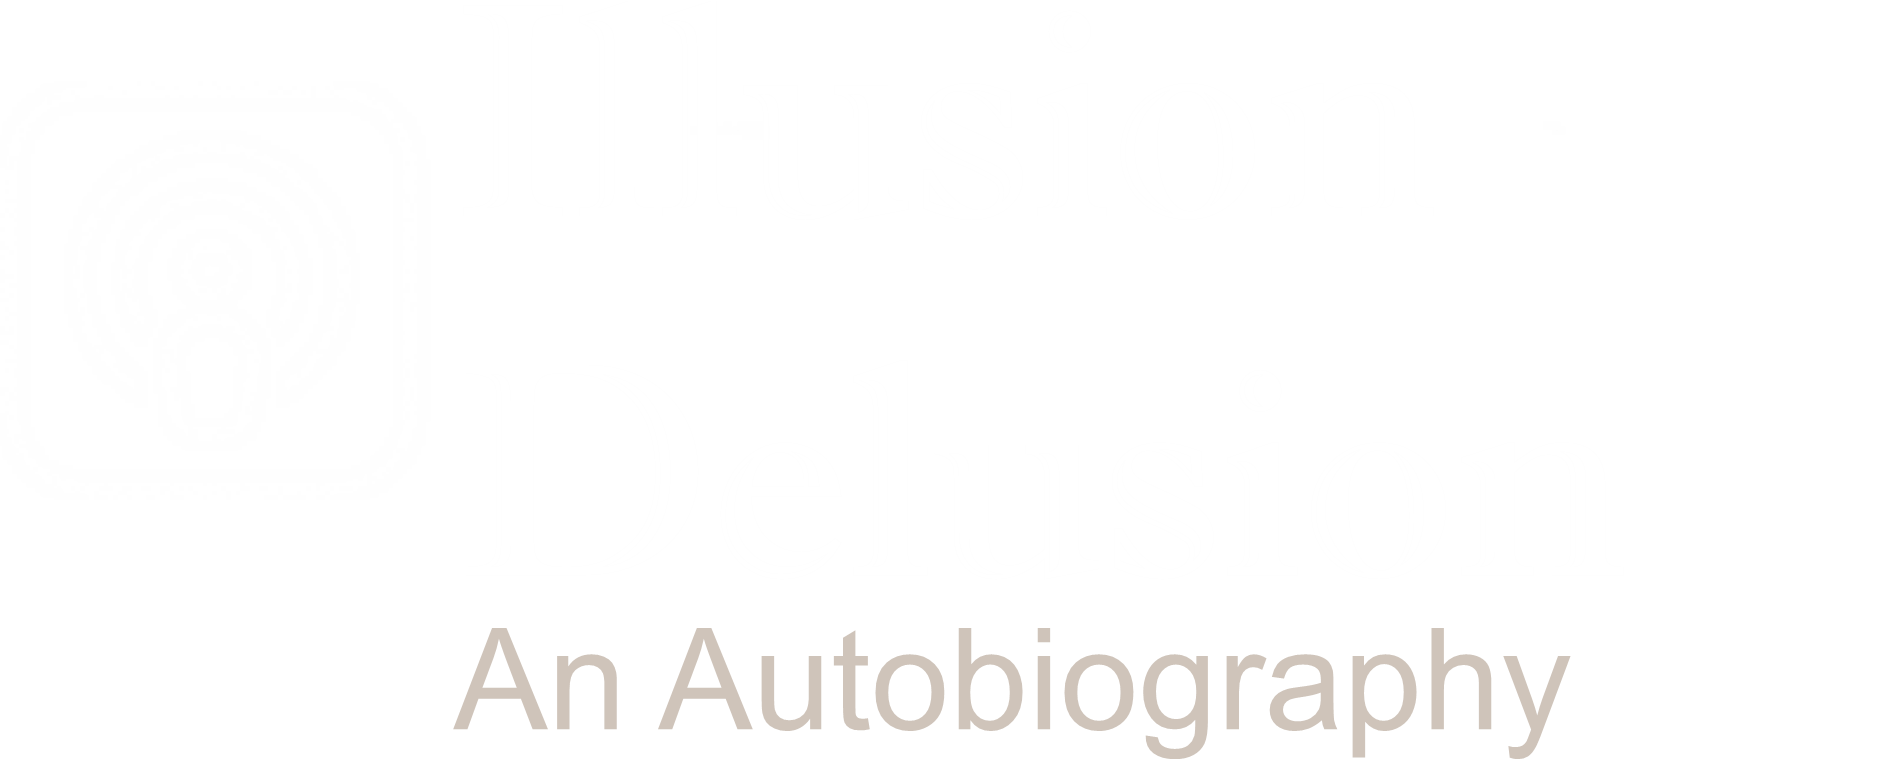 Illusion Delusion